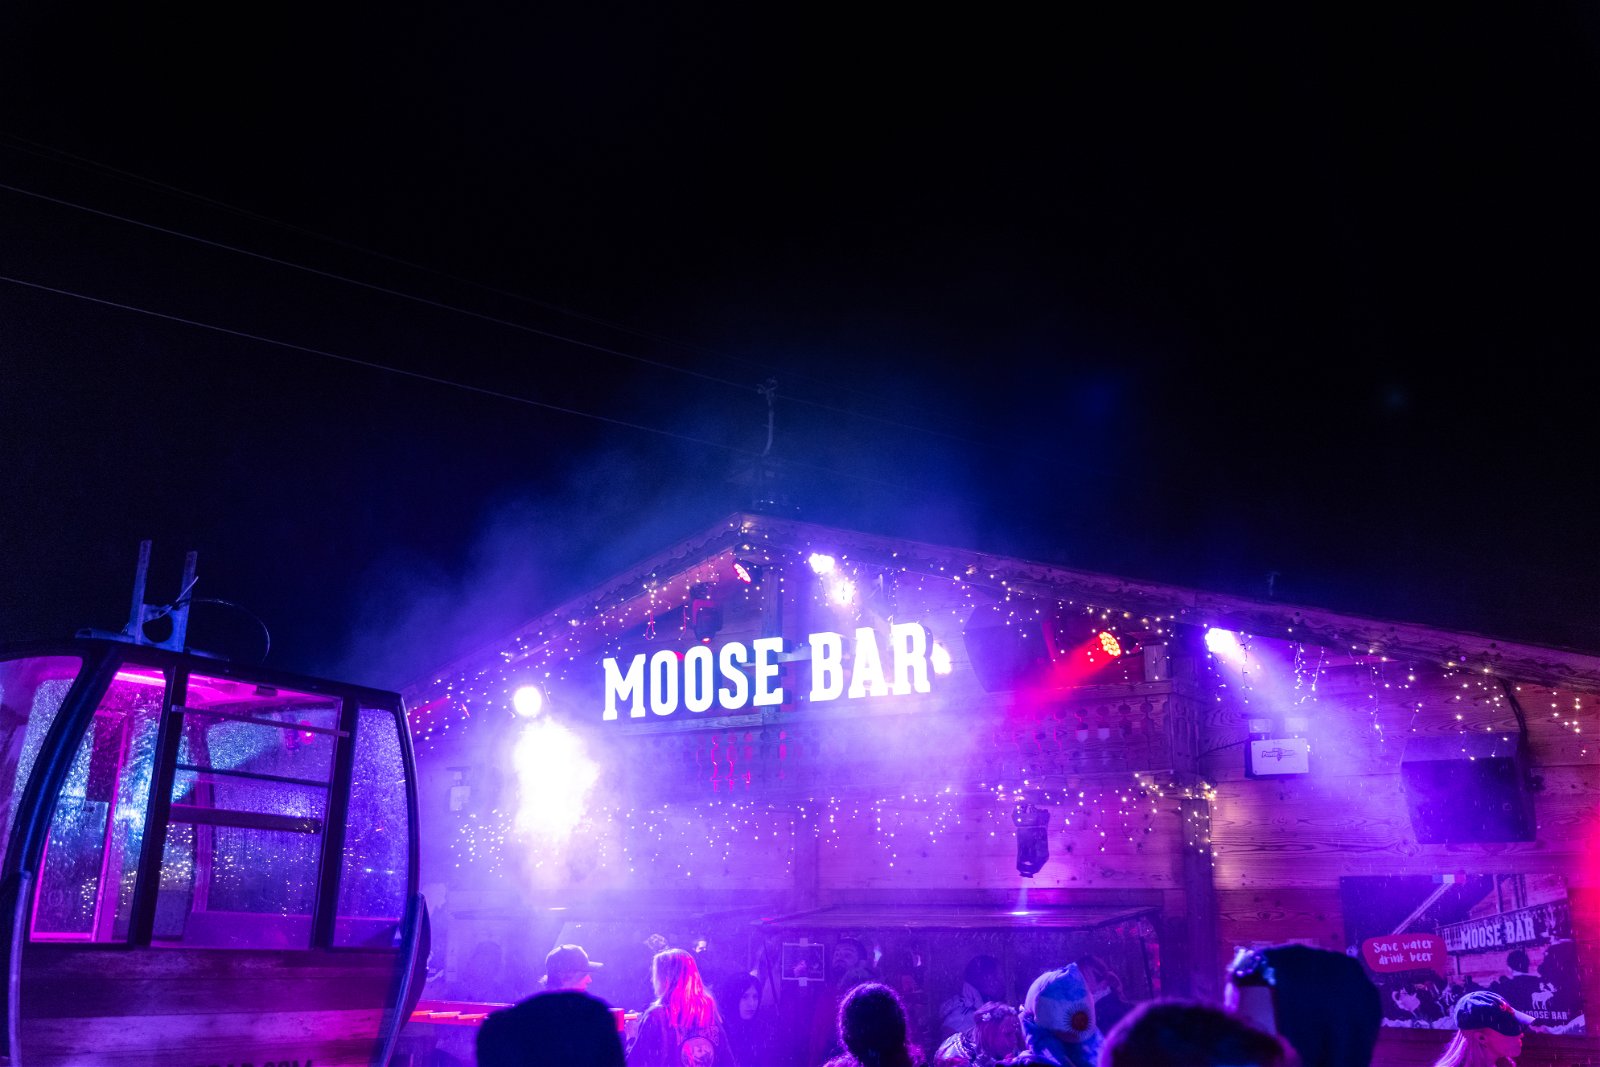 Moose Bar